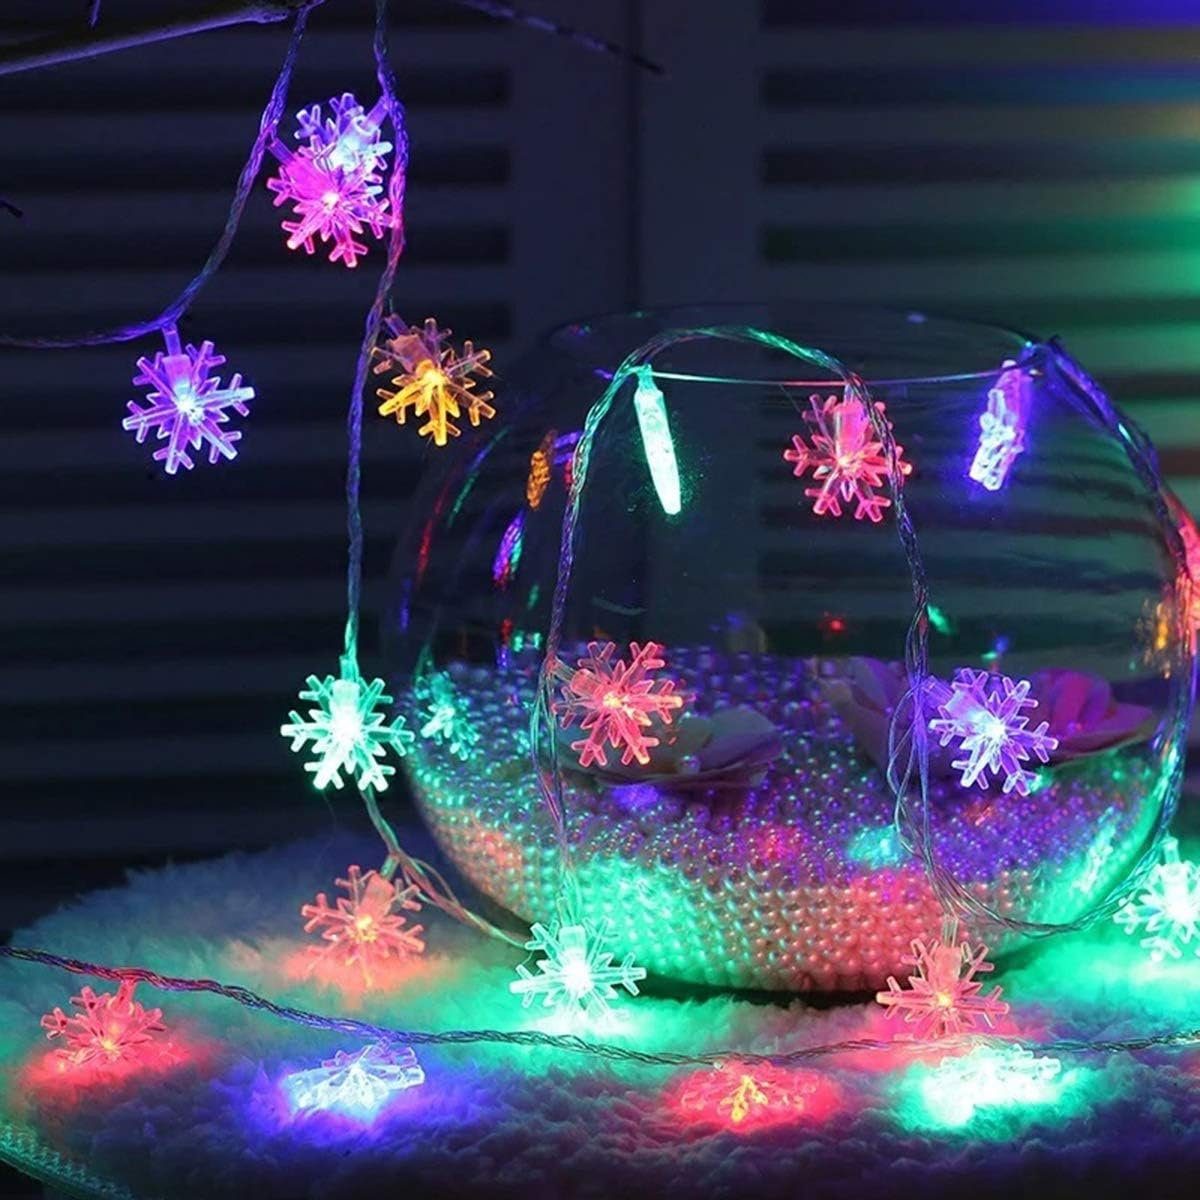 LED-Lichterkette Weihnachts-Lichterkette,12m,LED-Lichterkette,für Jormftte Weihnachten,Party